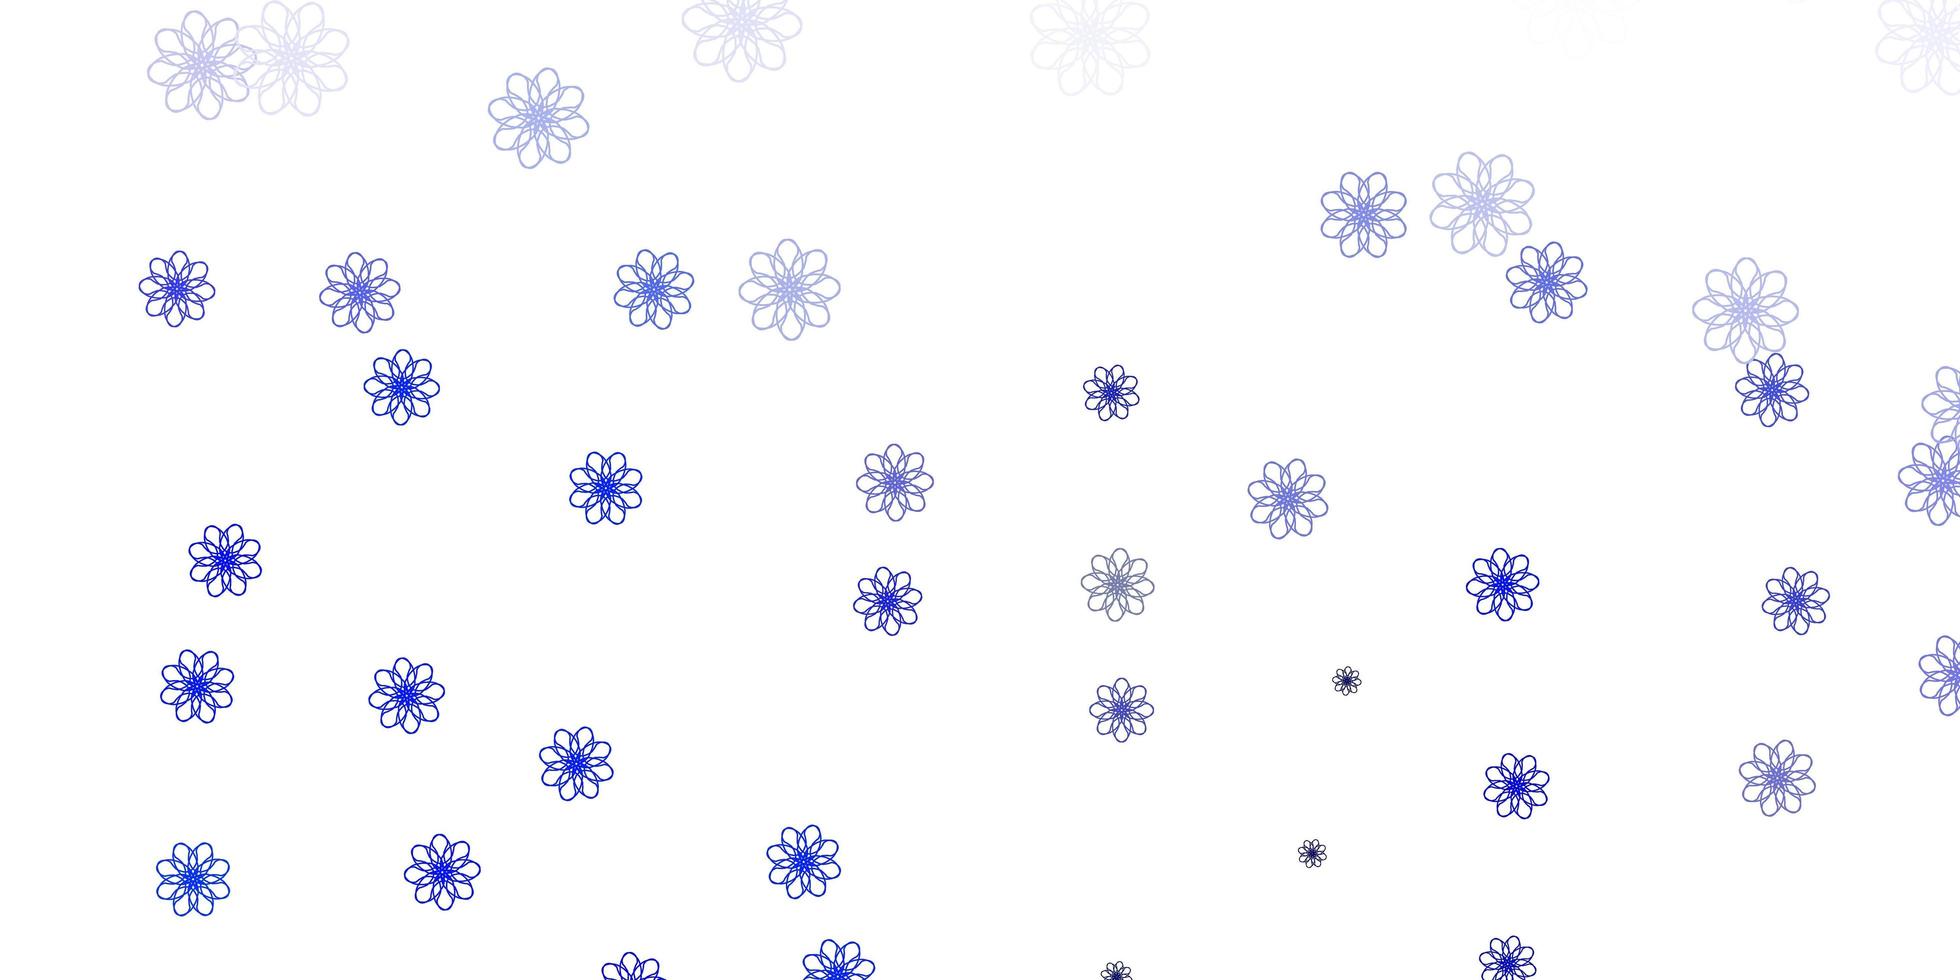 texture de doodle vecteur bleu clair avec des fleurs.